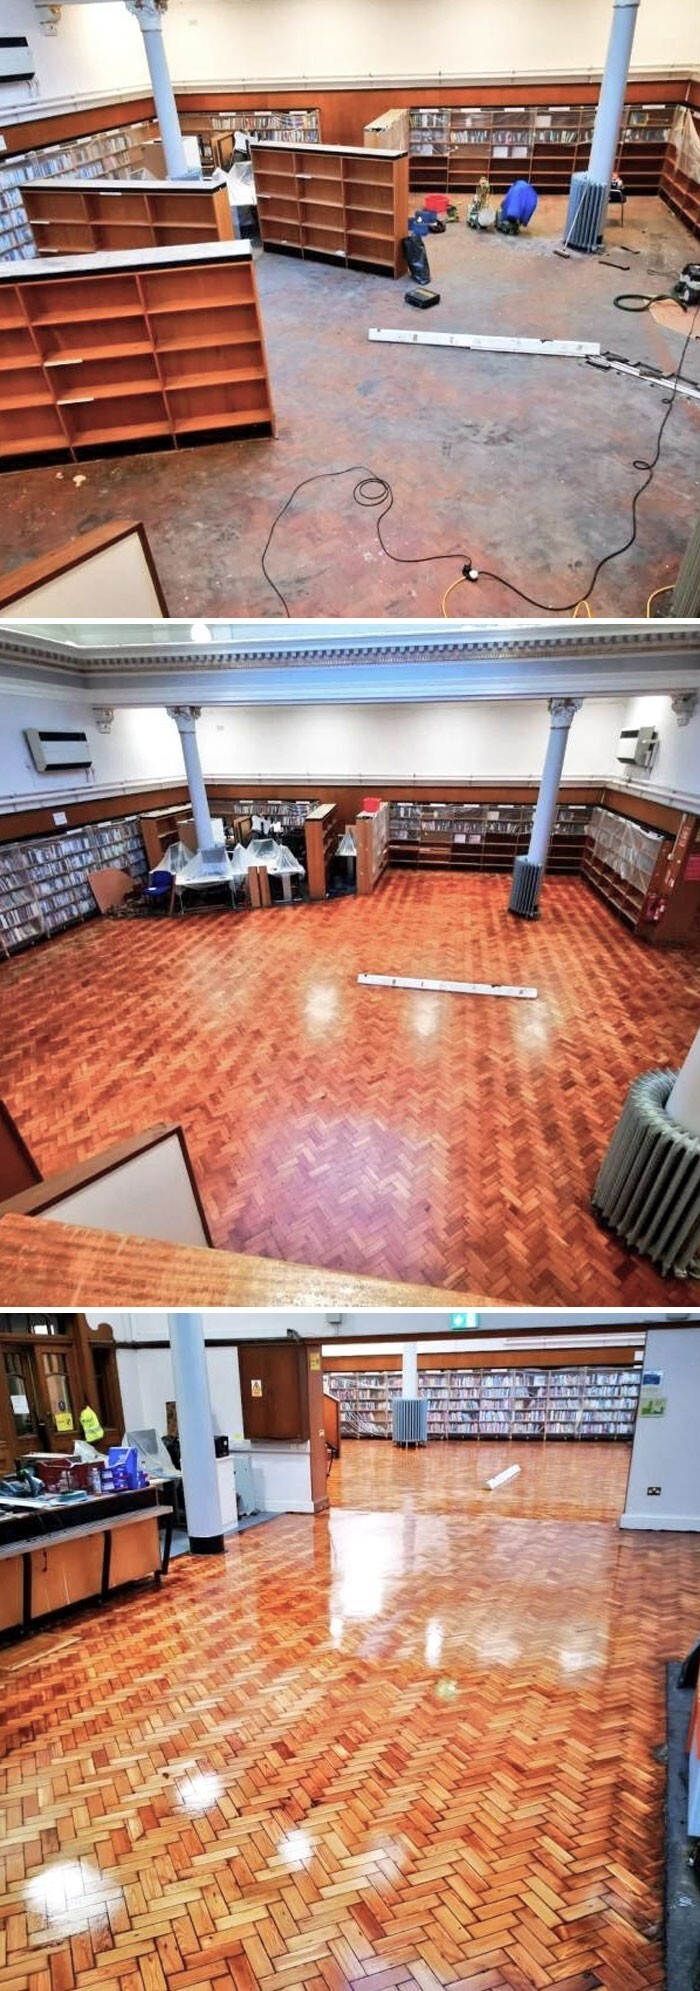 1. «В библиотеке Глазго под ковровым покрытием нашли деревянный паркетный пол возрастом 117 лет»